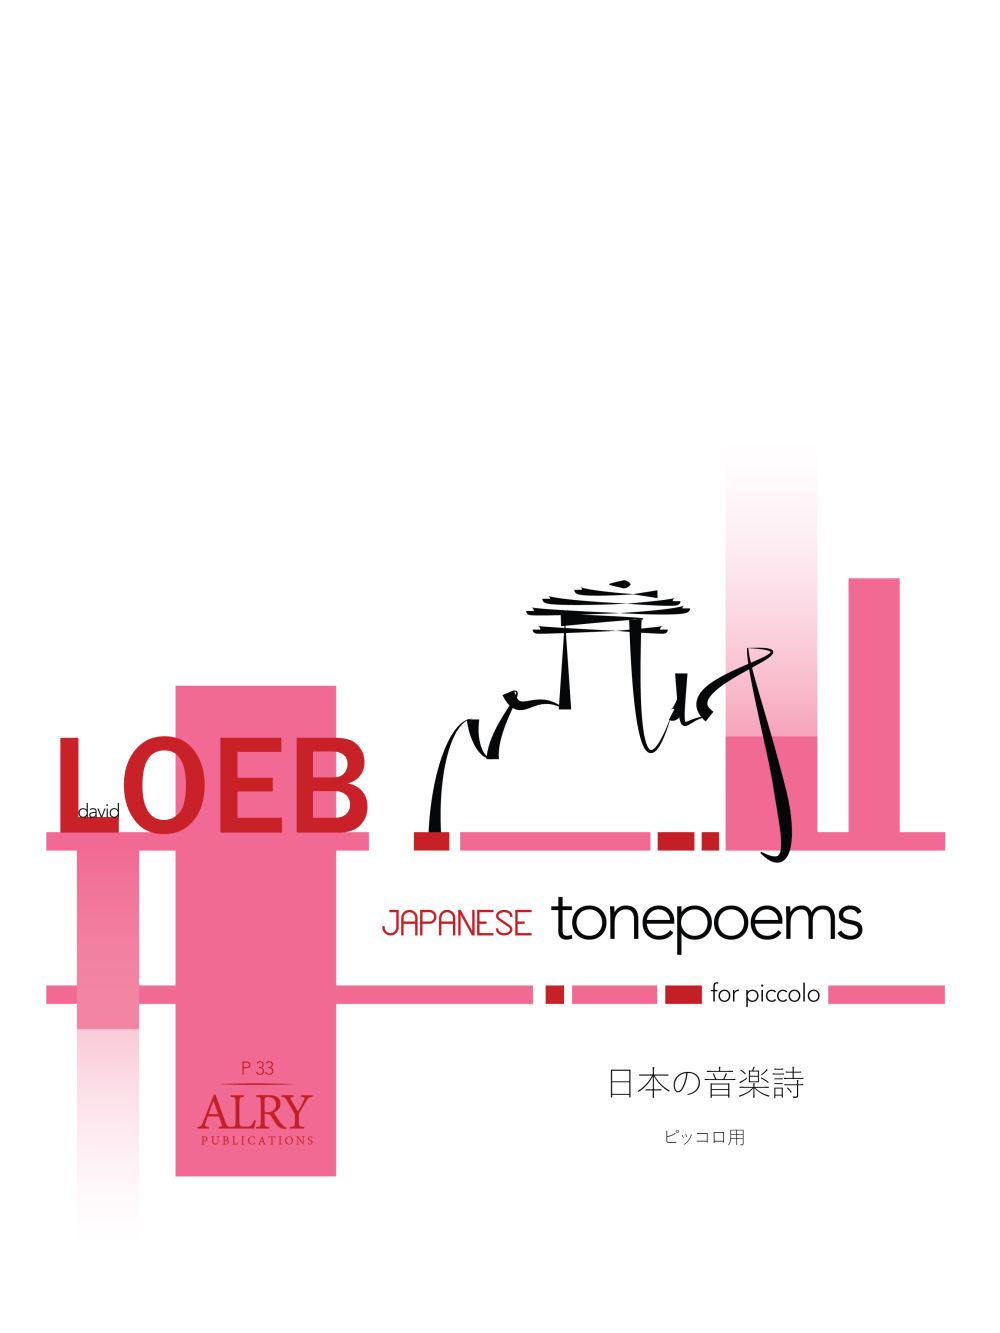 Japanese Tone Poems (LOEB DAVID)